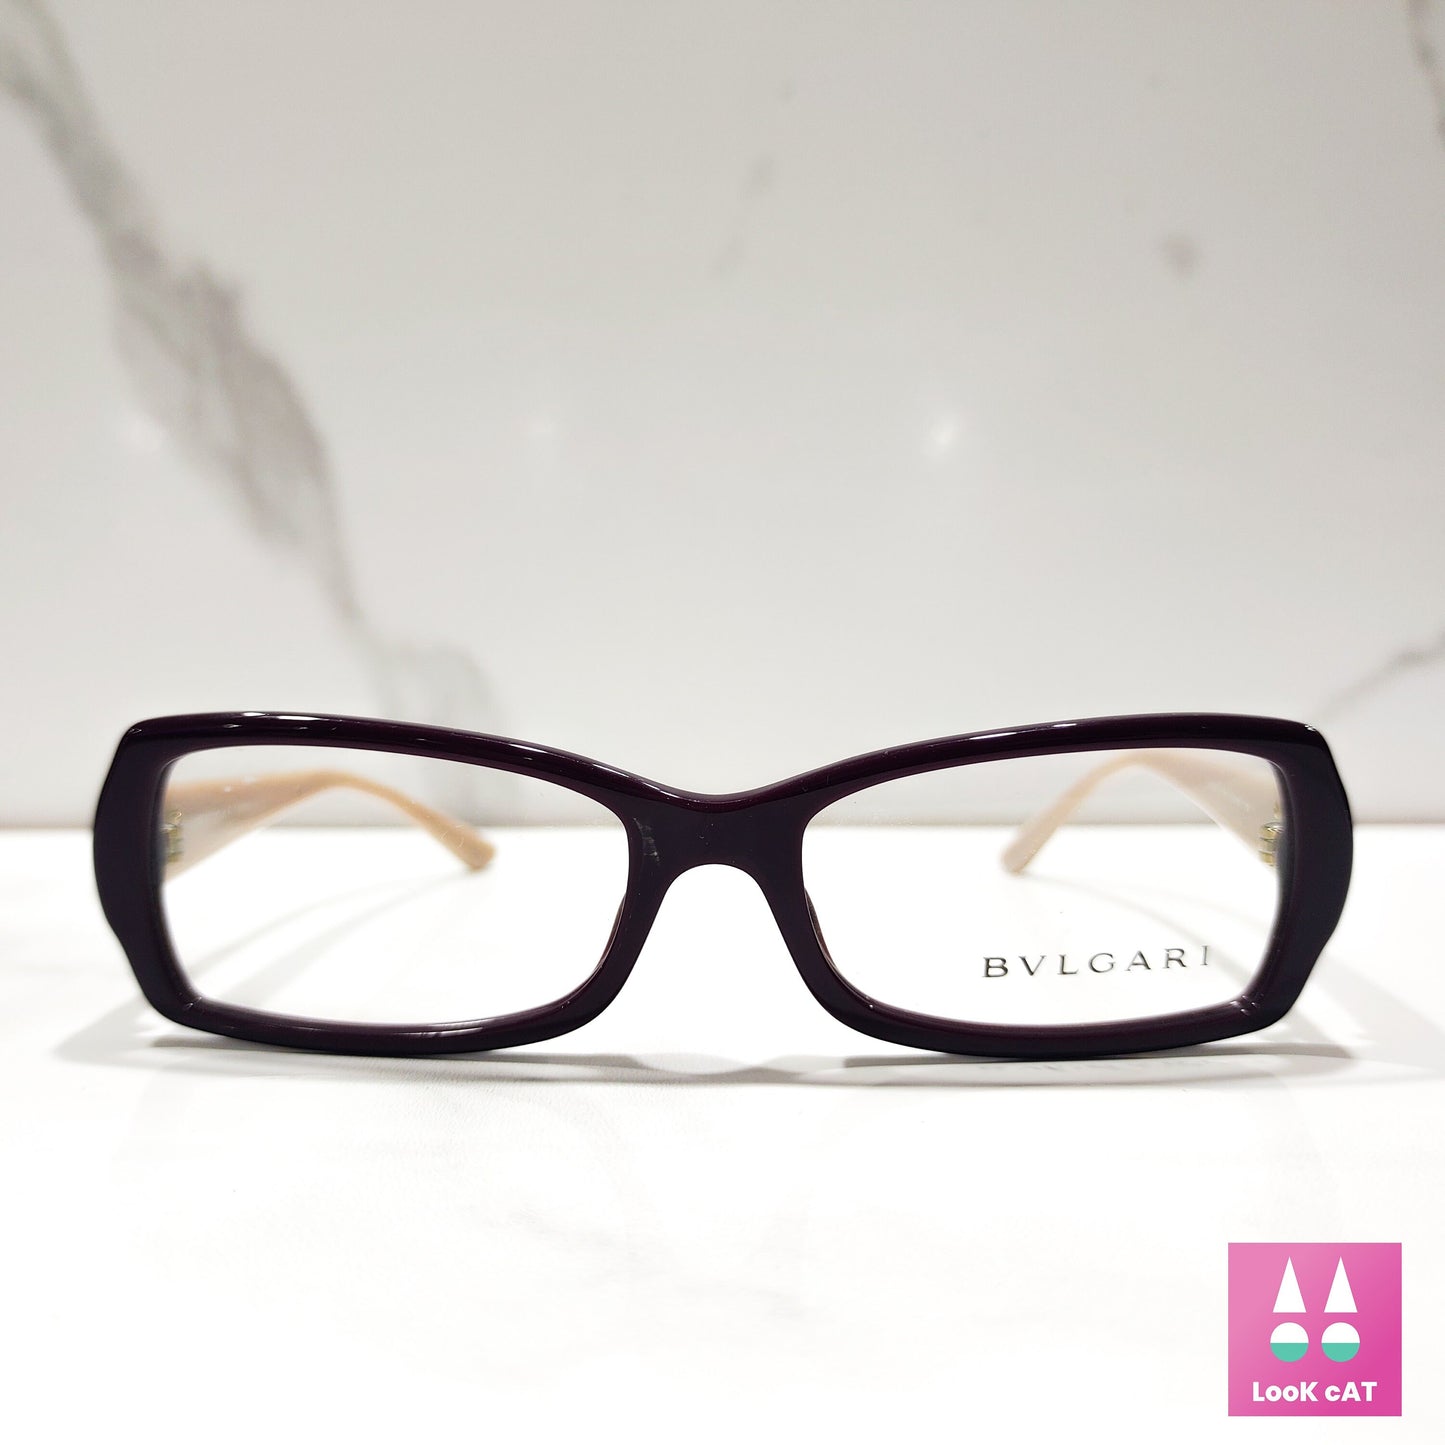 Bvlgari 限量版眼镜框水钻边框 brille 色调 y2k 无框